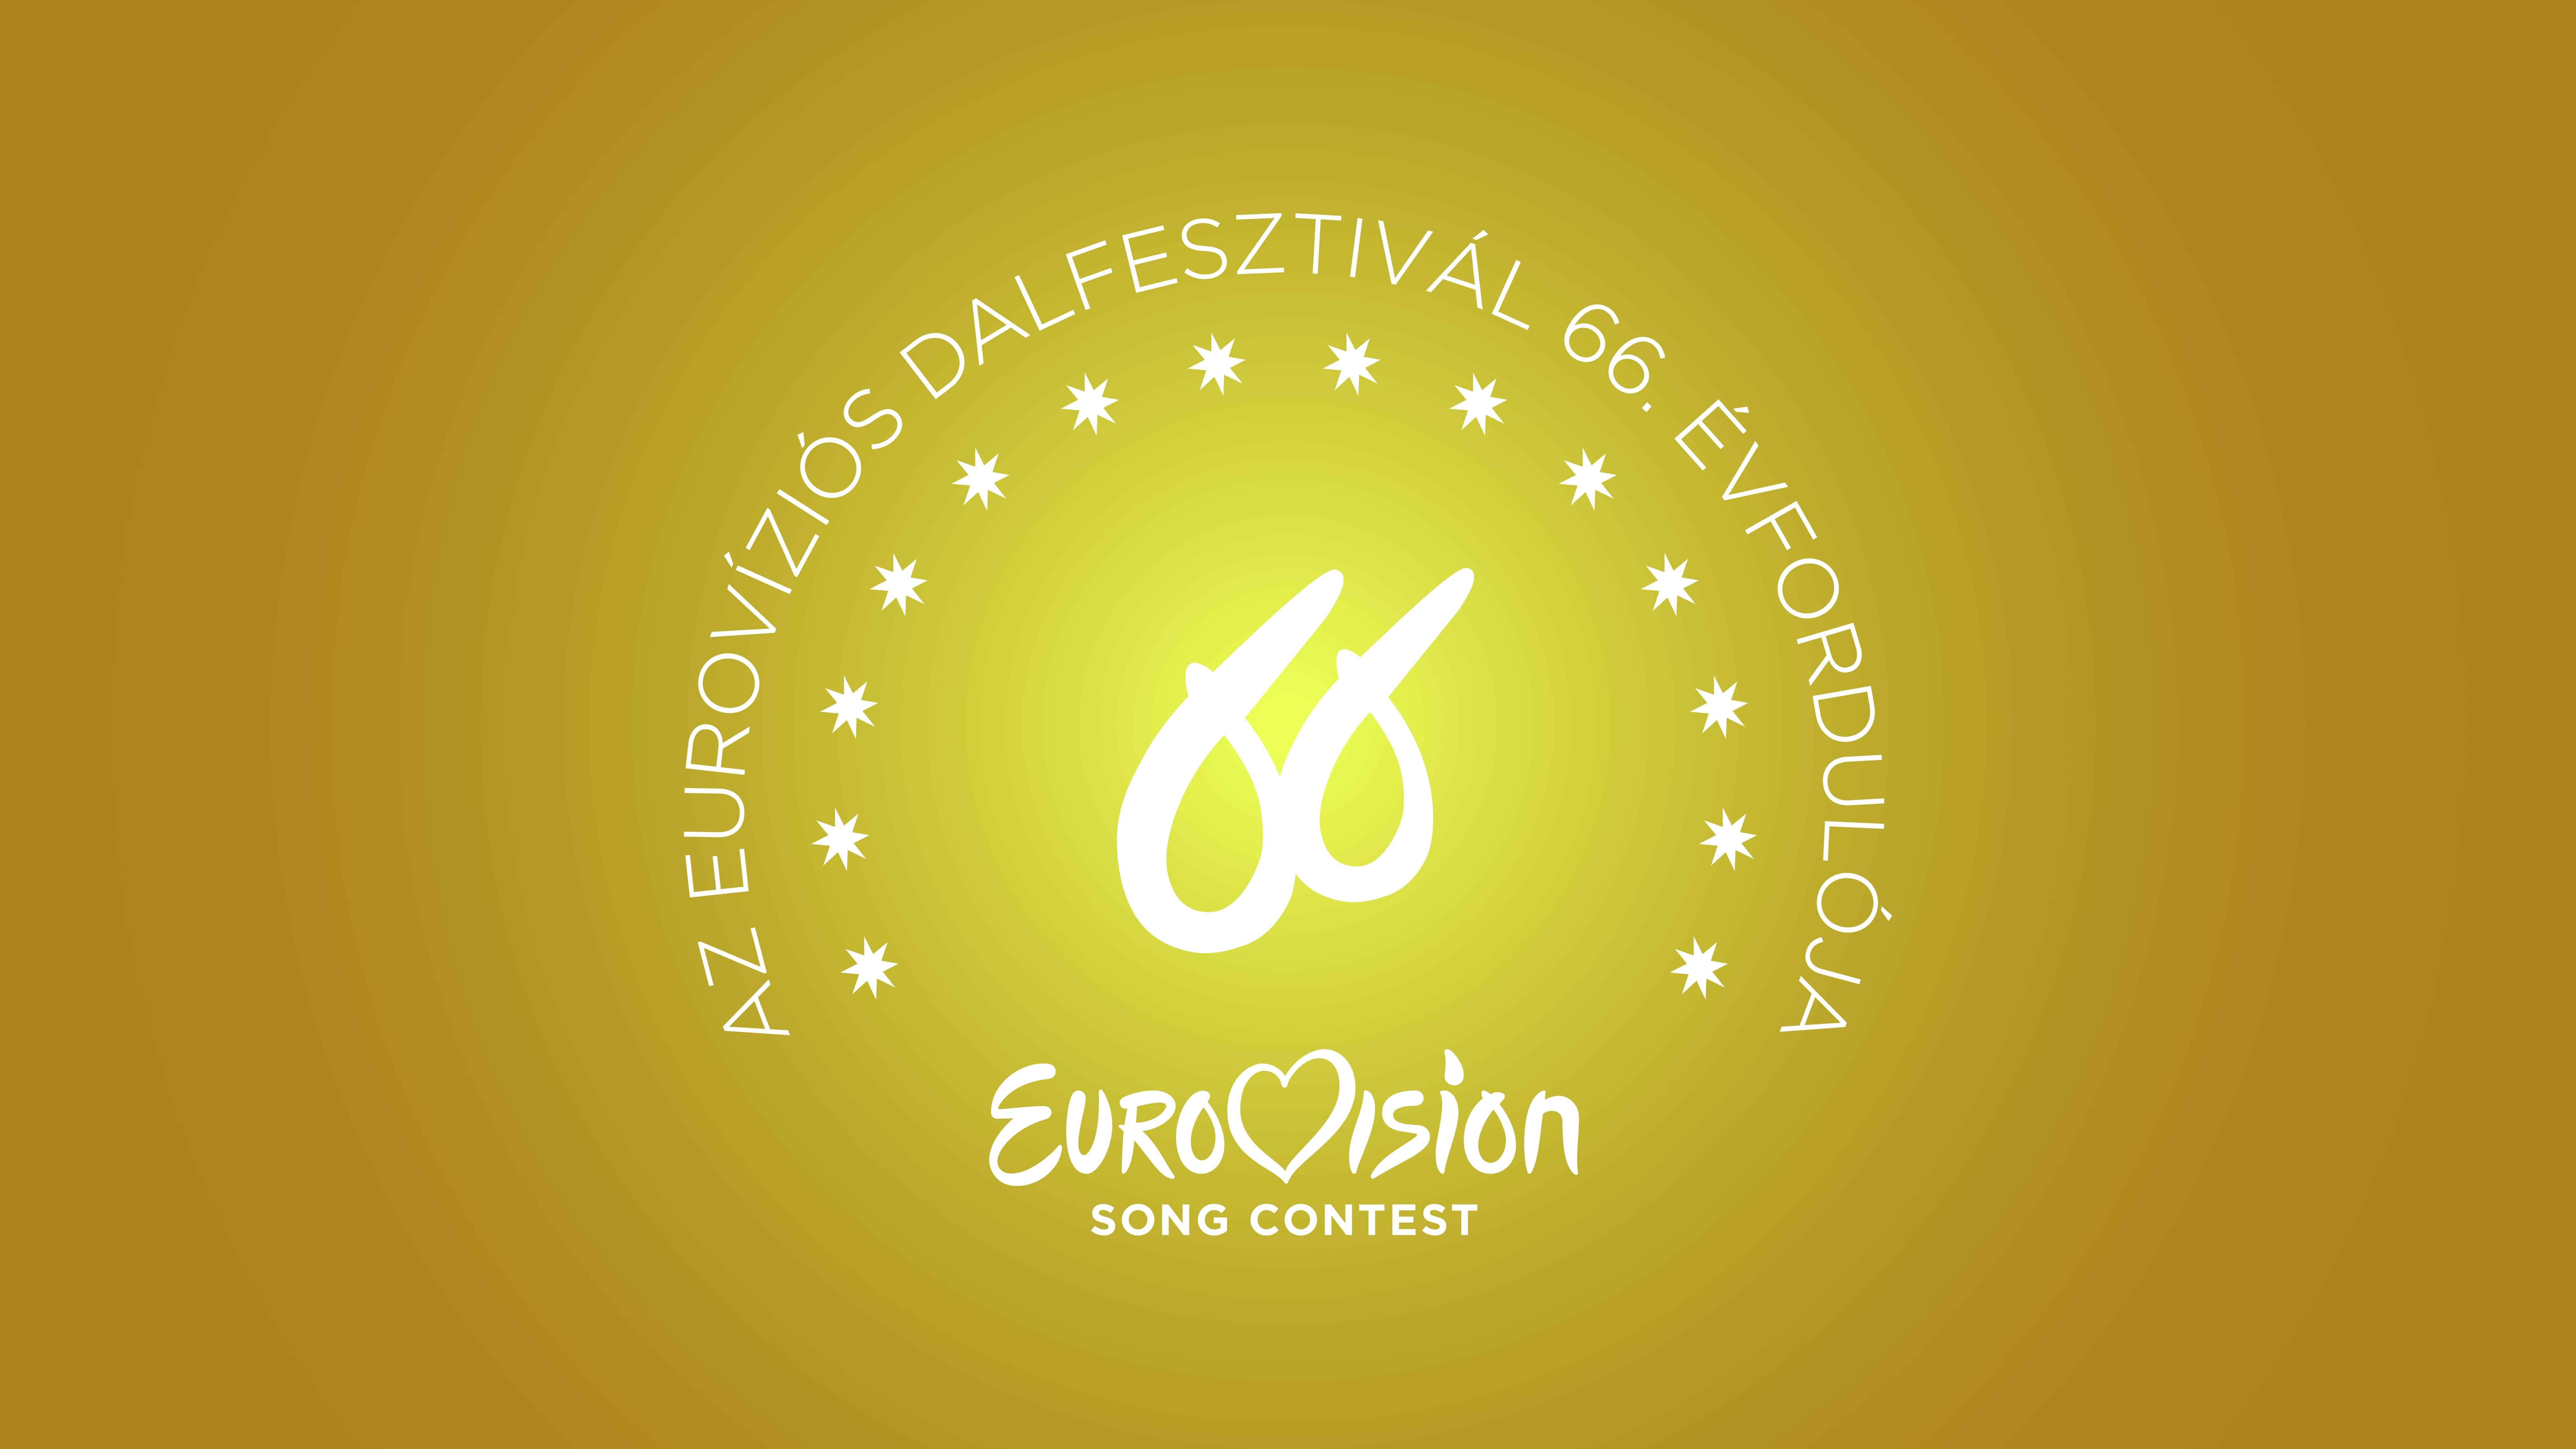 Az Eurovíziós Dalfesztivál 66. évfordulójára, az OurVision International által készített grafika - az EBU és az Eurovíziós Hálózat grafikája alapján (HD)